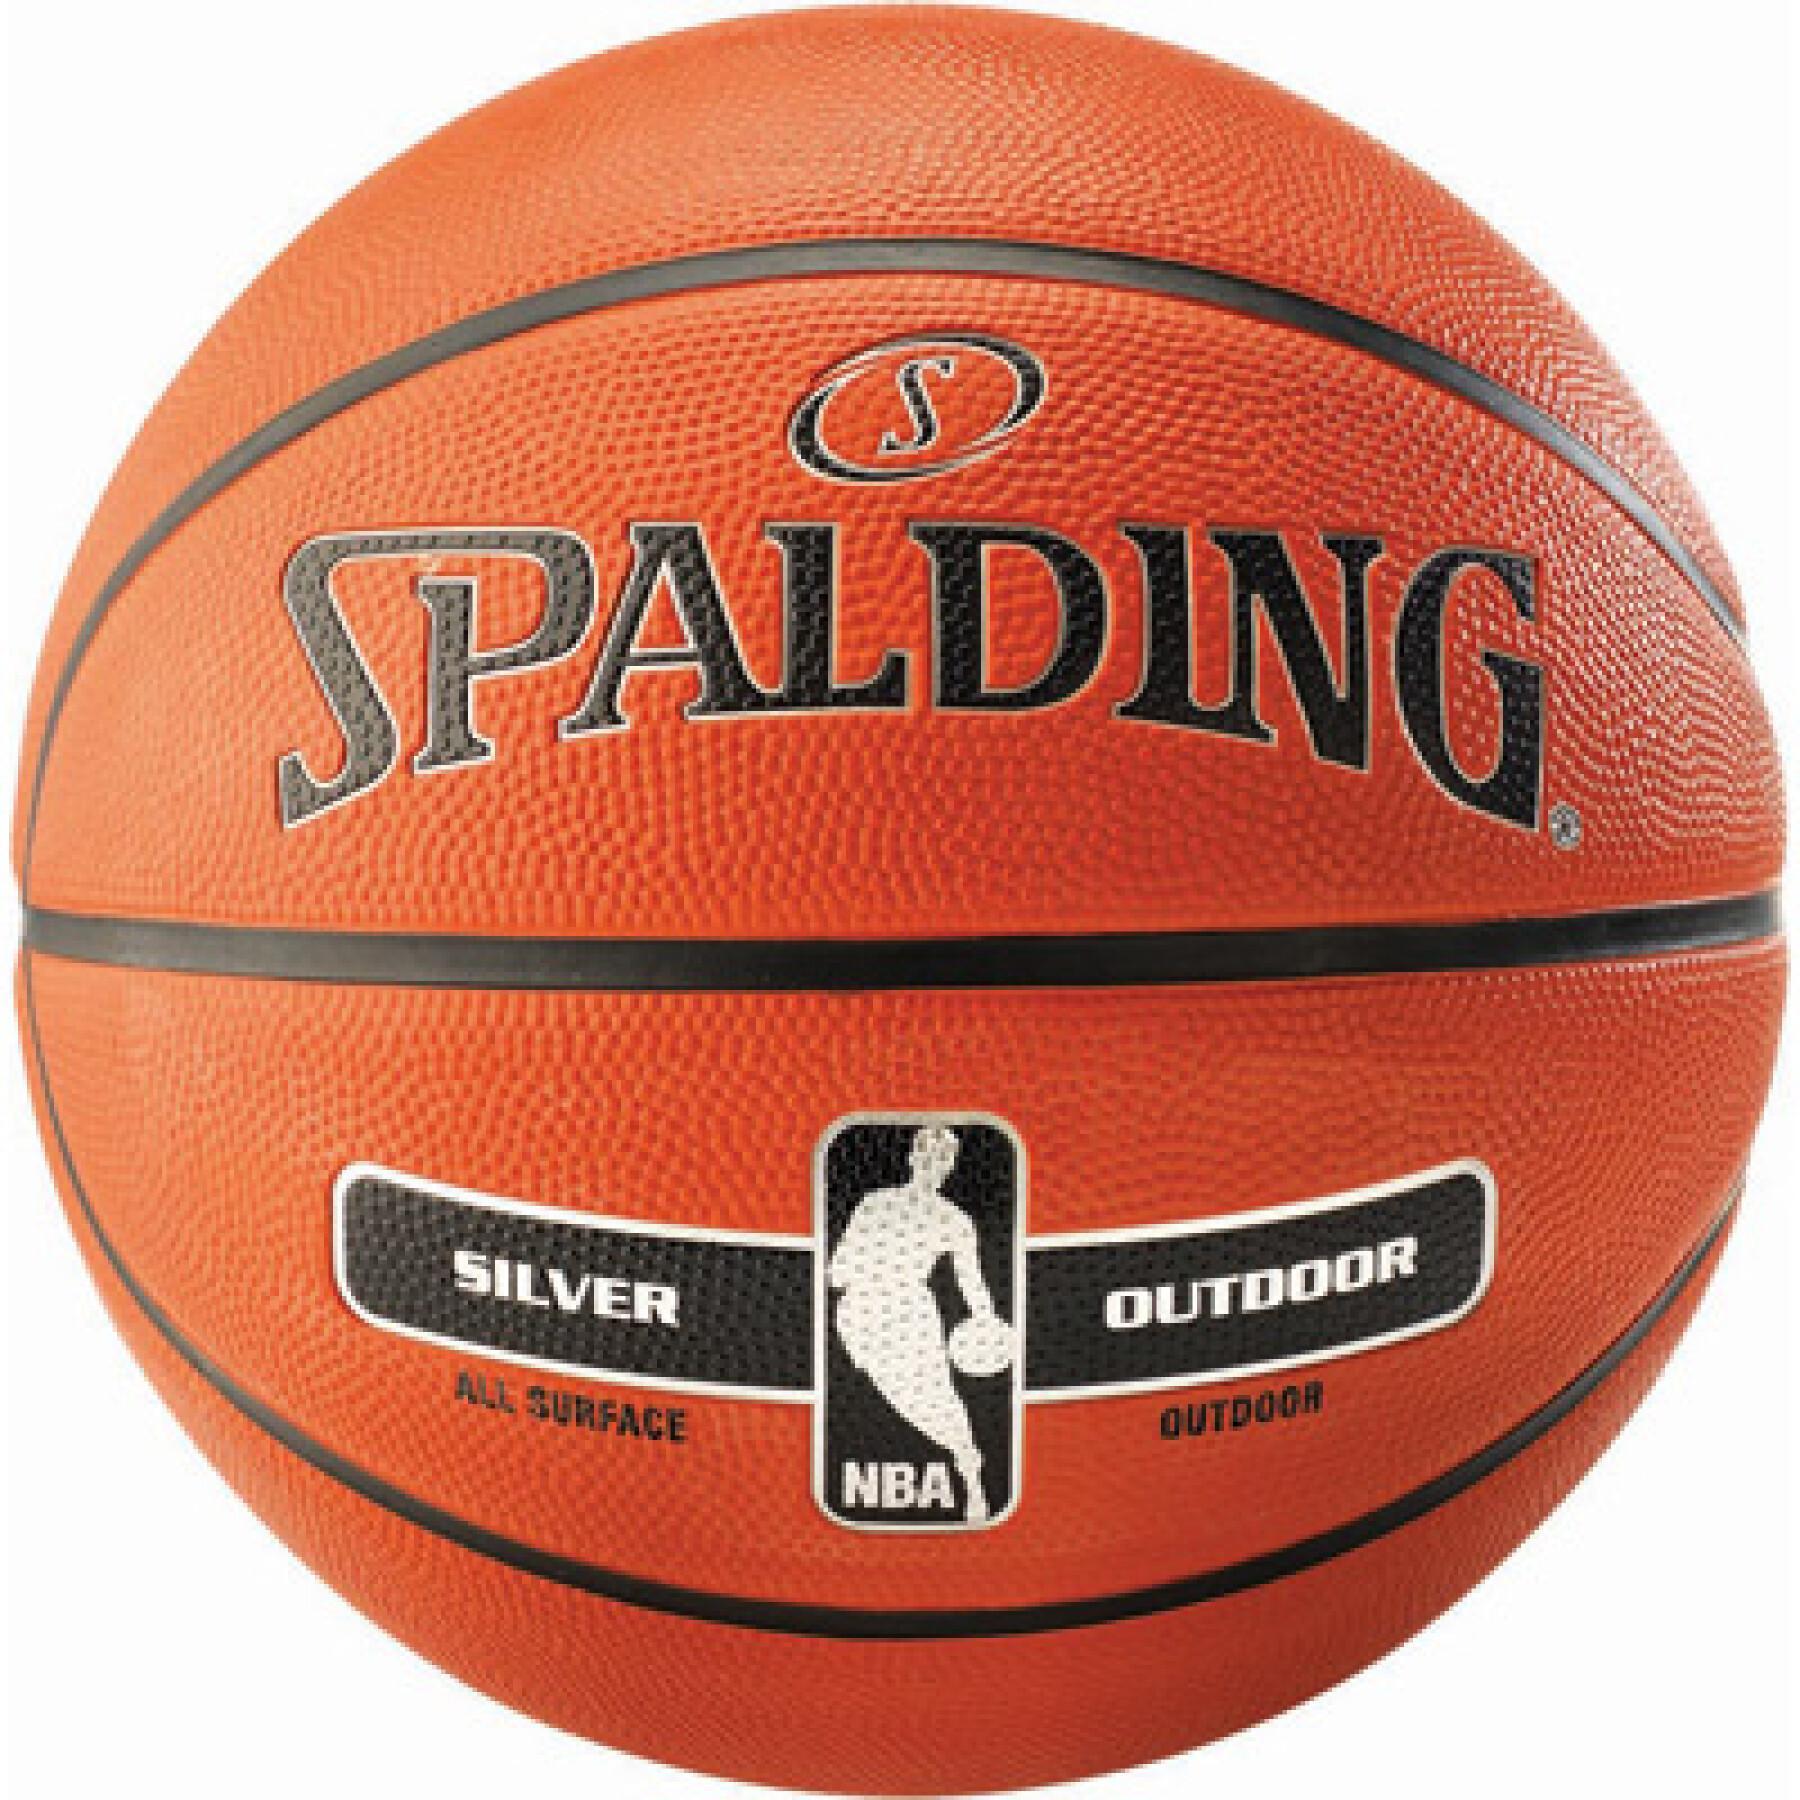 Basketbal Spalding Nba Silver outdoor